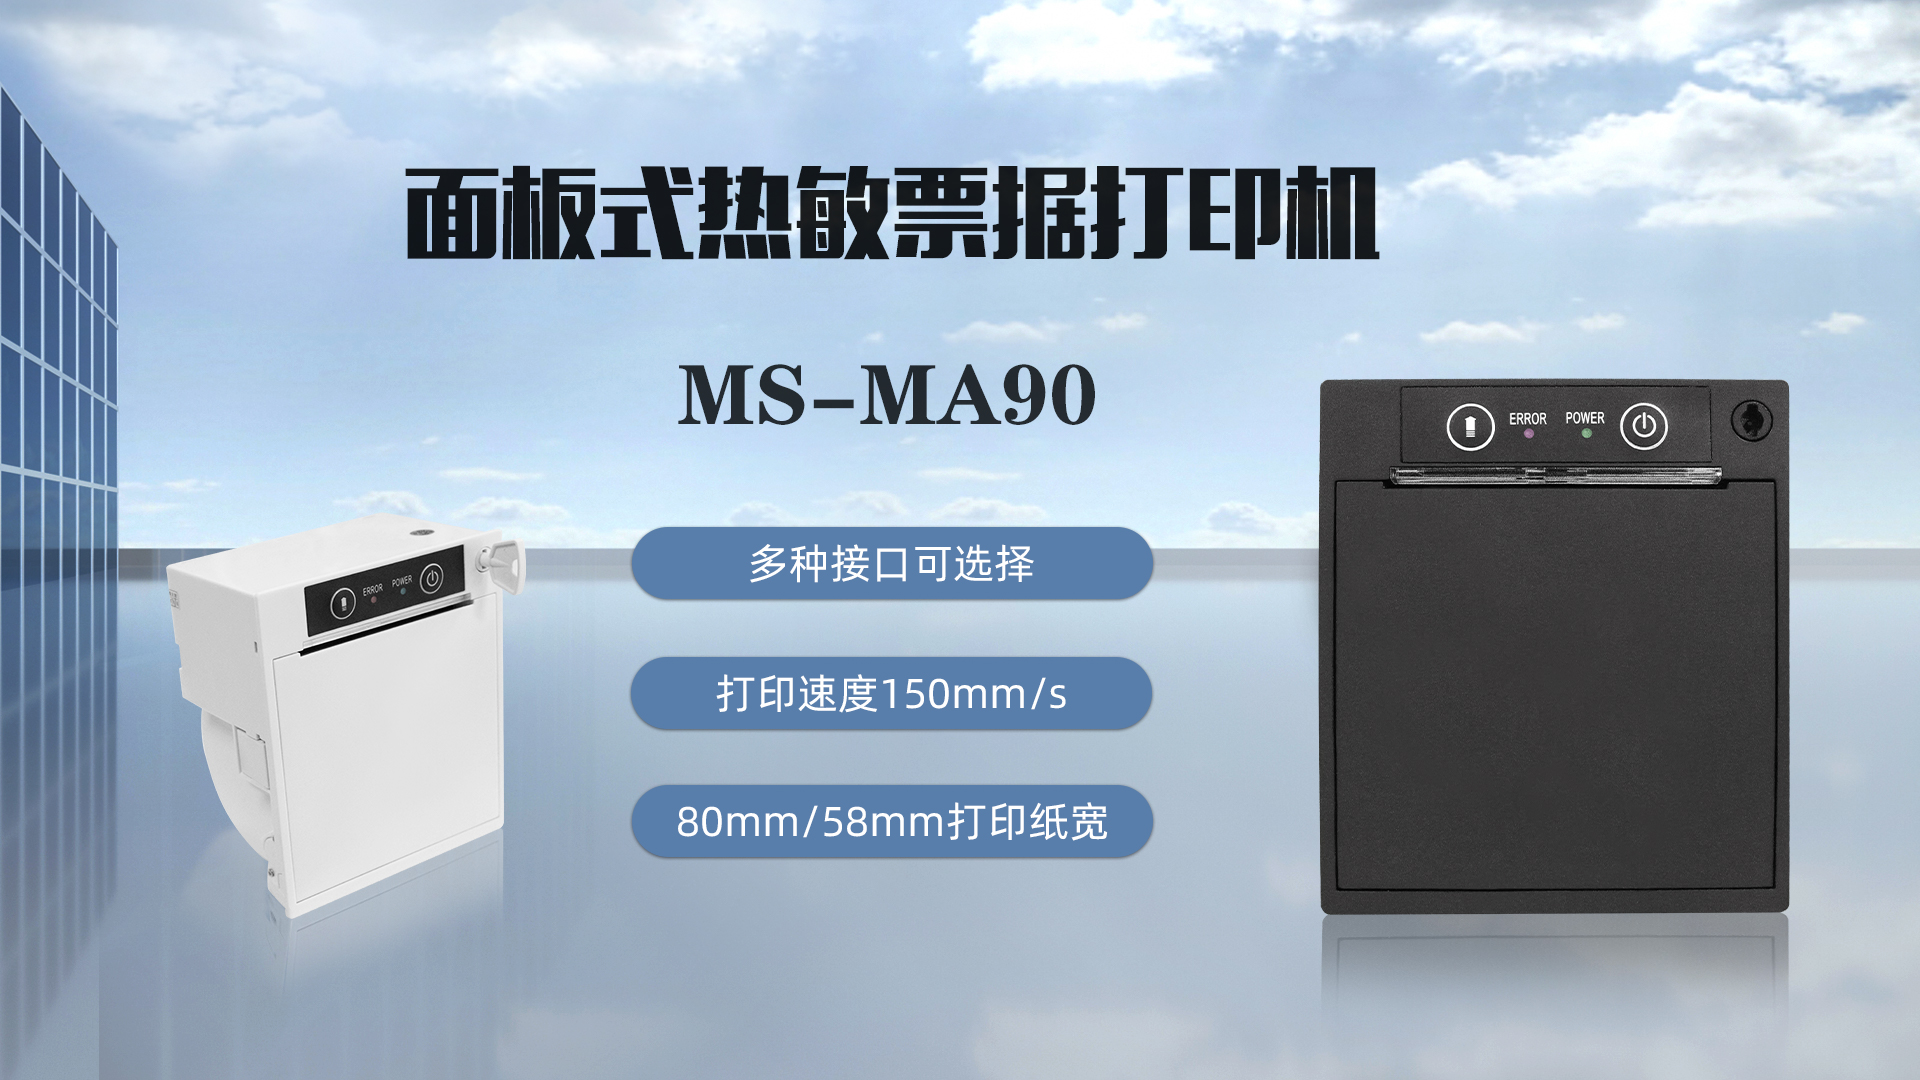 美松打印机MS-MA90为球赛号码打印提供解决方案